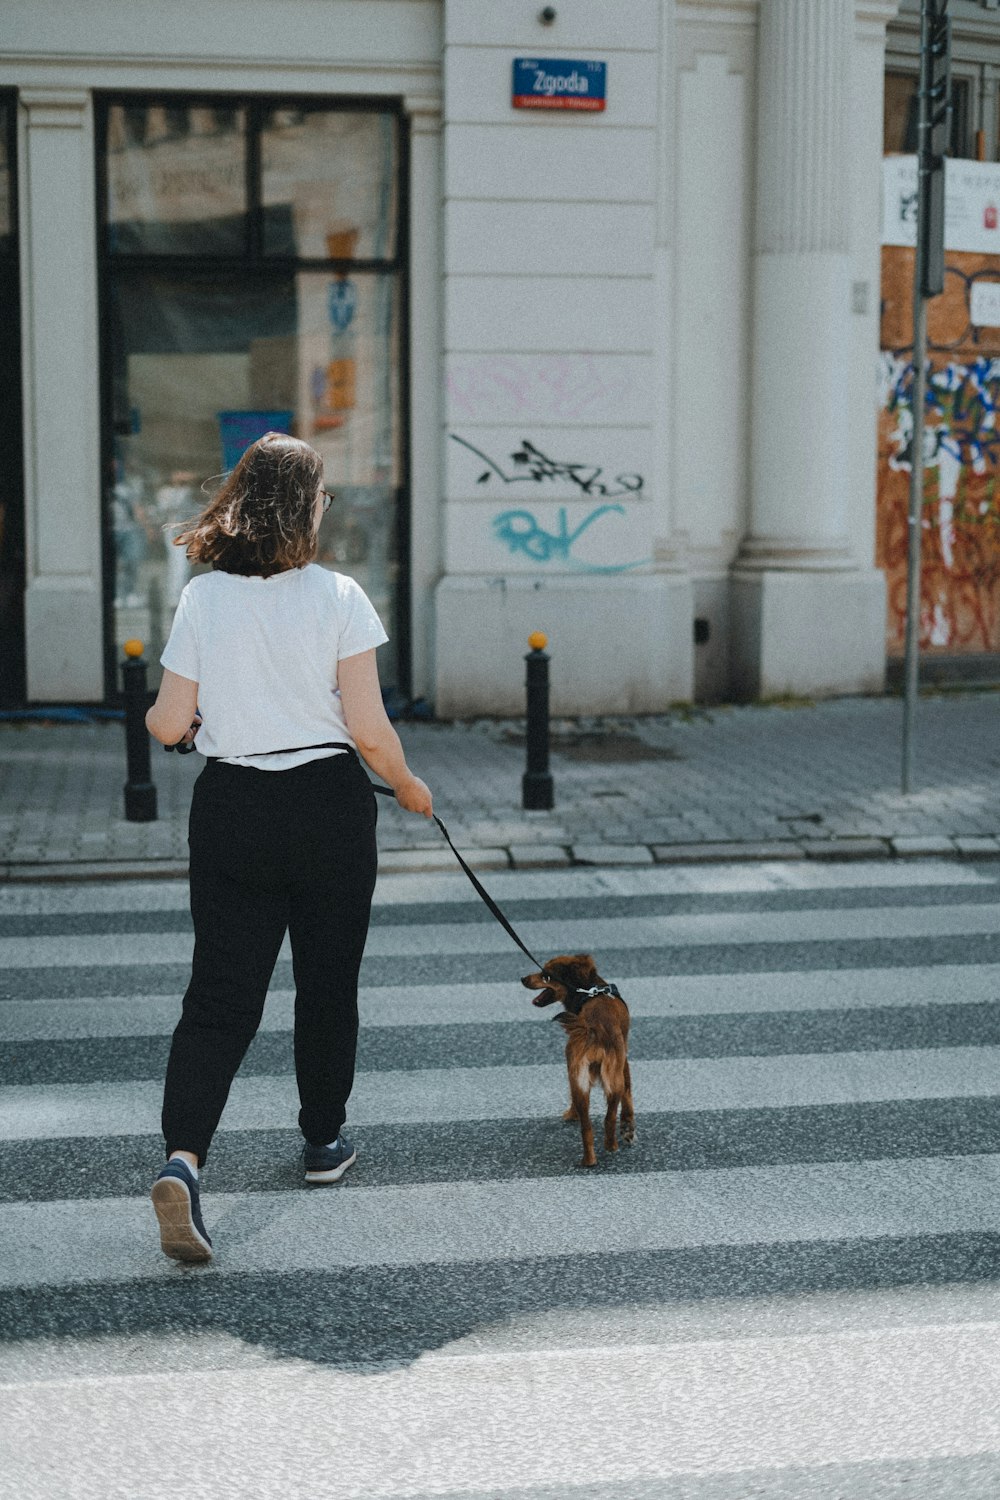 a woman walking a dog across a cross walk